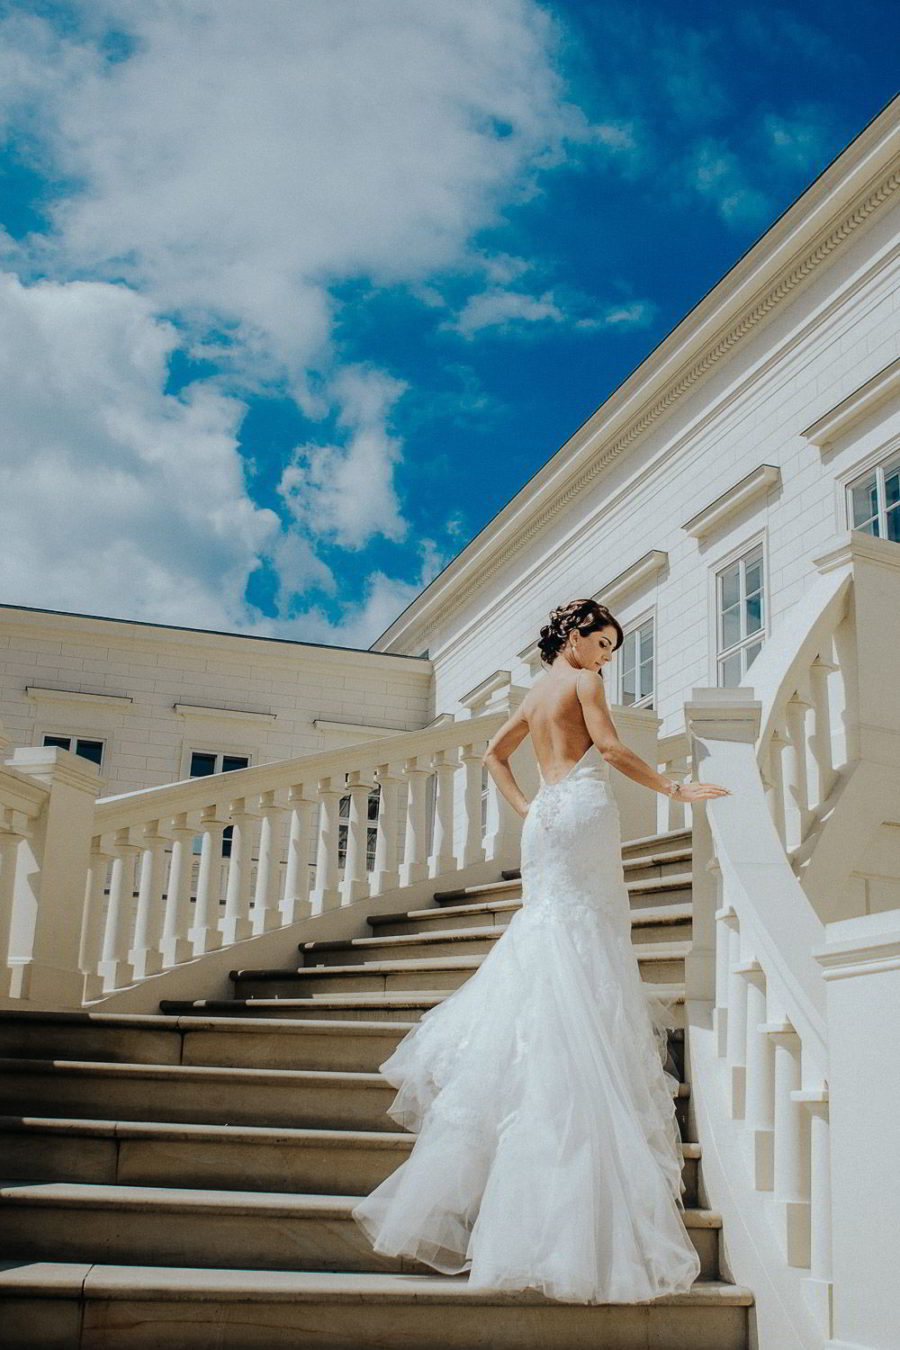 Braut auf der Treppe in Herrenhäuser Gärten in Hannover